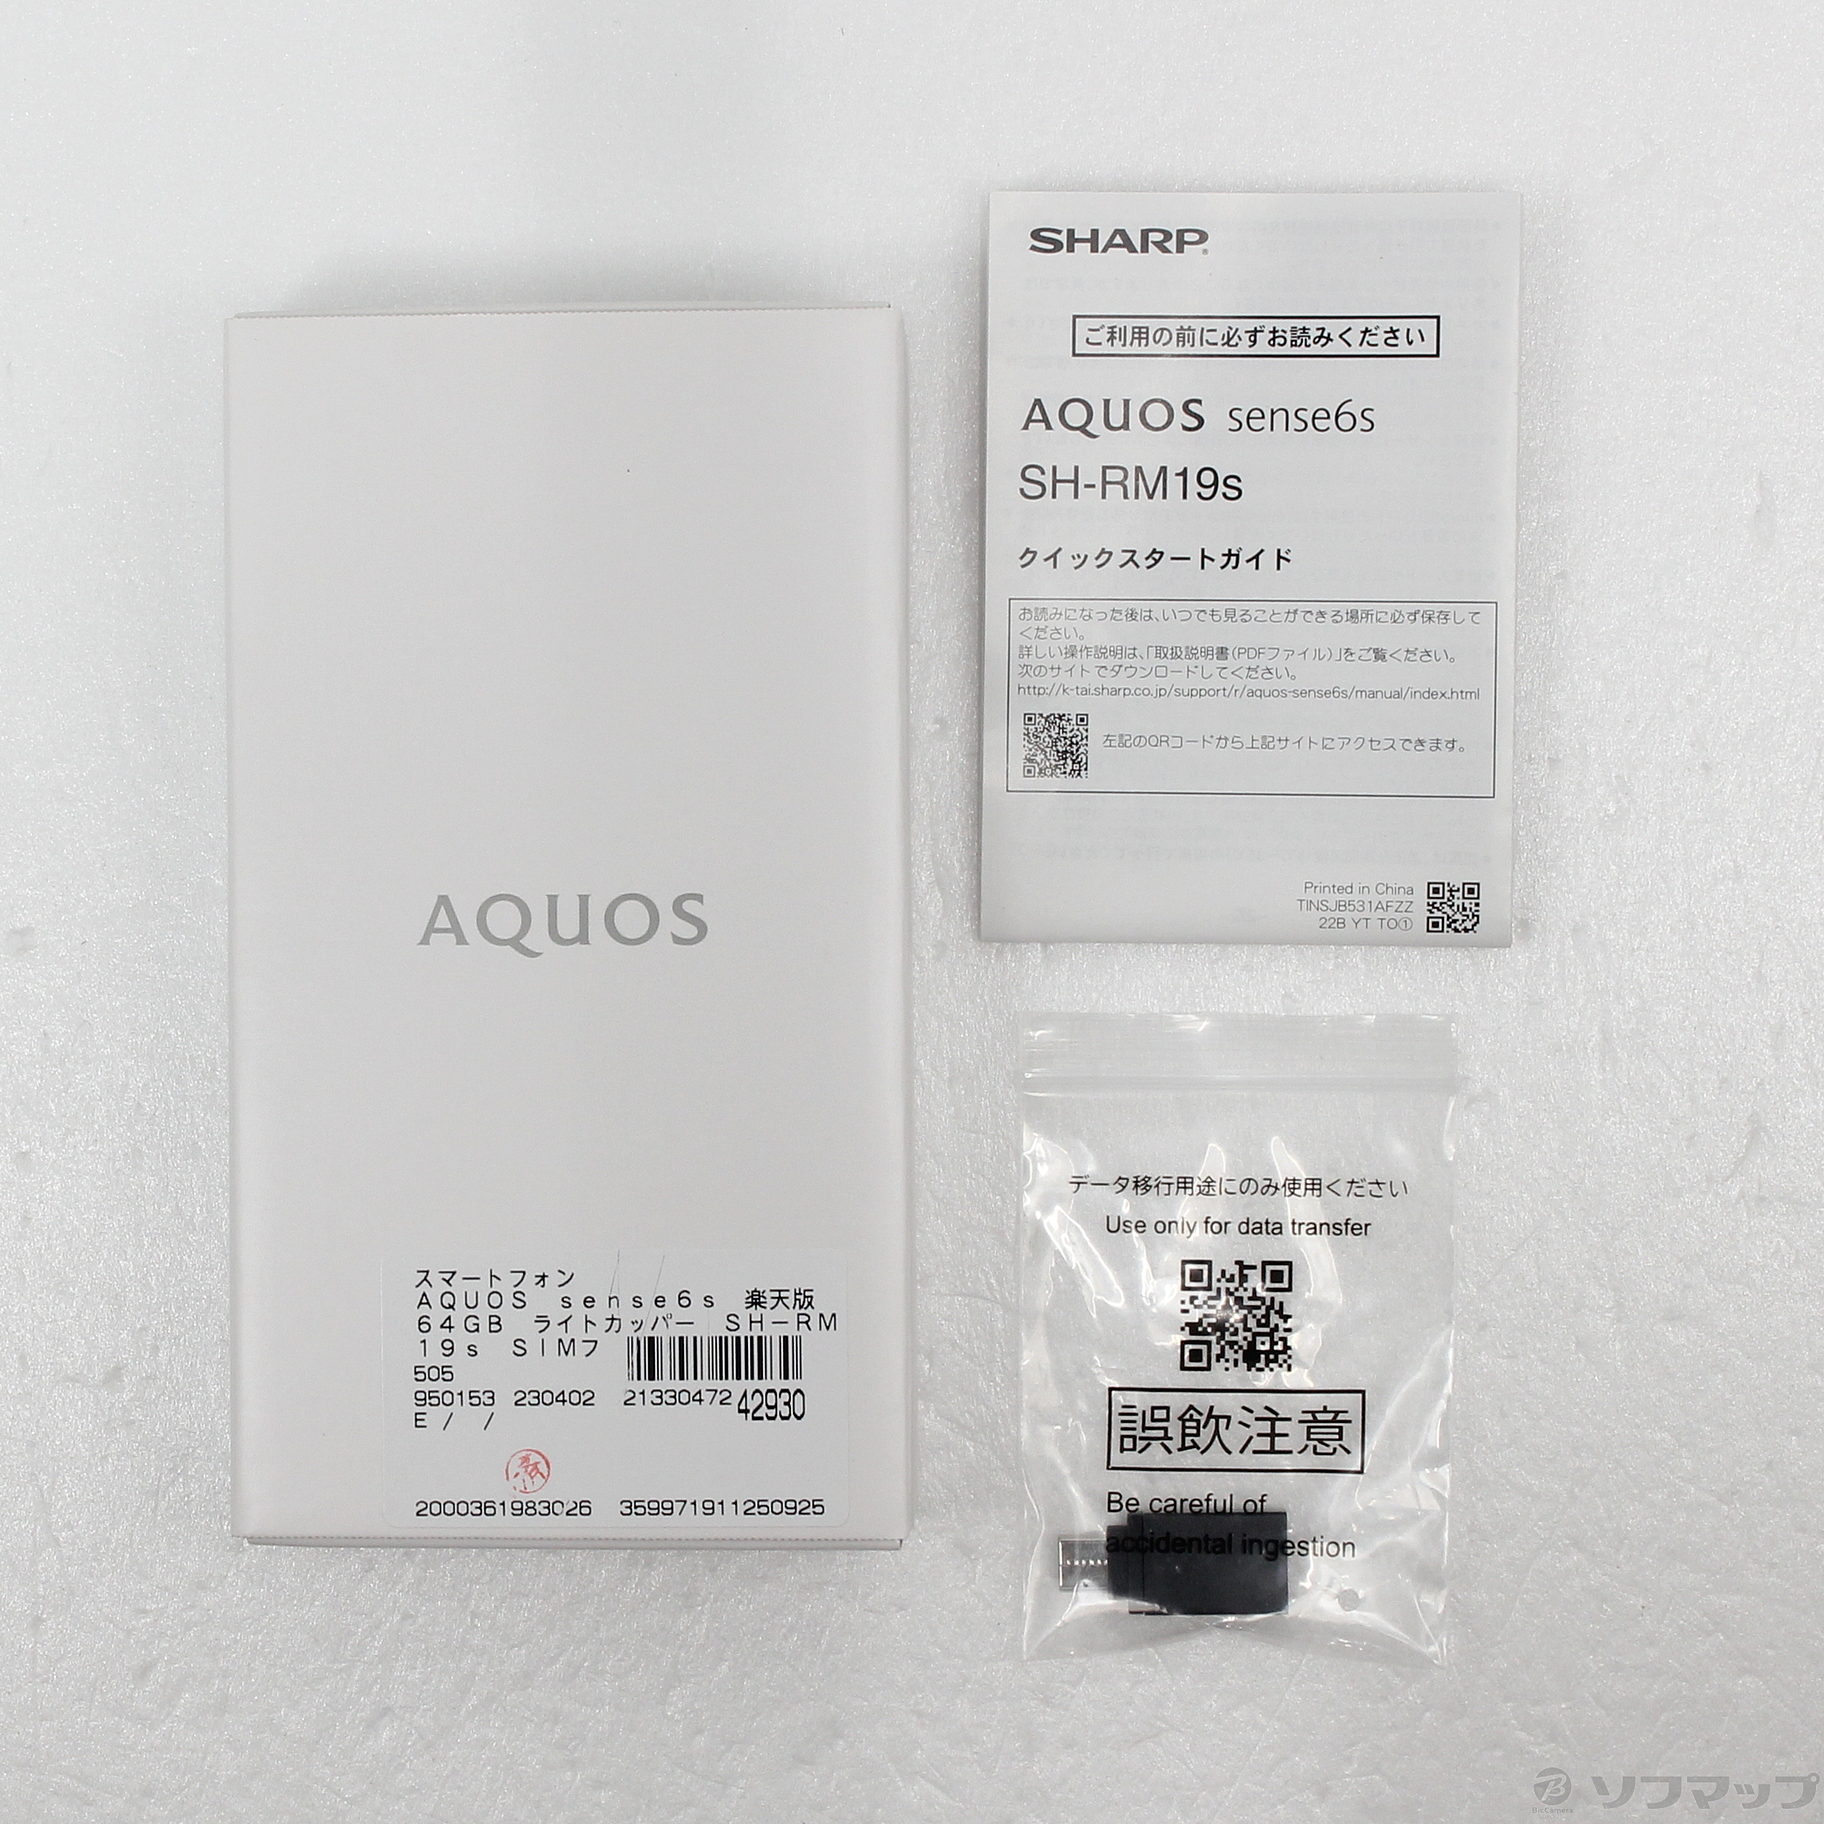 中古】AQUOS sense6s 楽天版 64GB ライトカッパー SH-RM19s SIMフリー ...